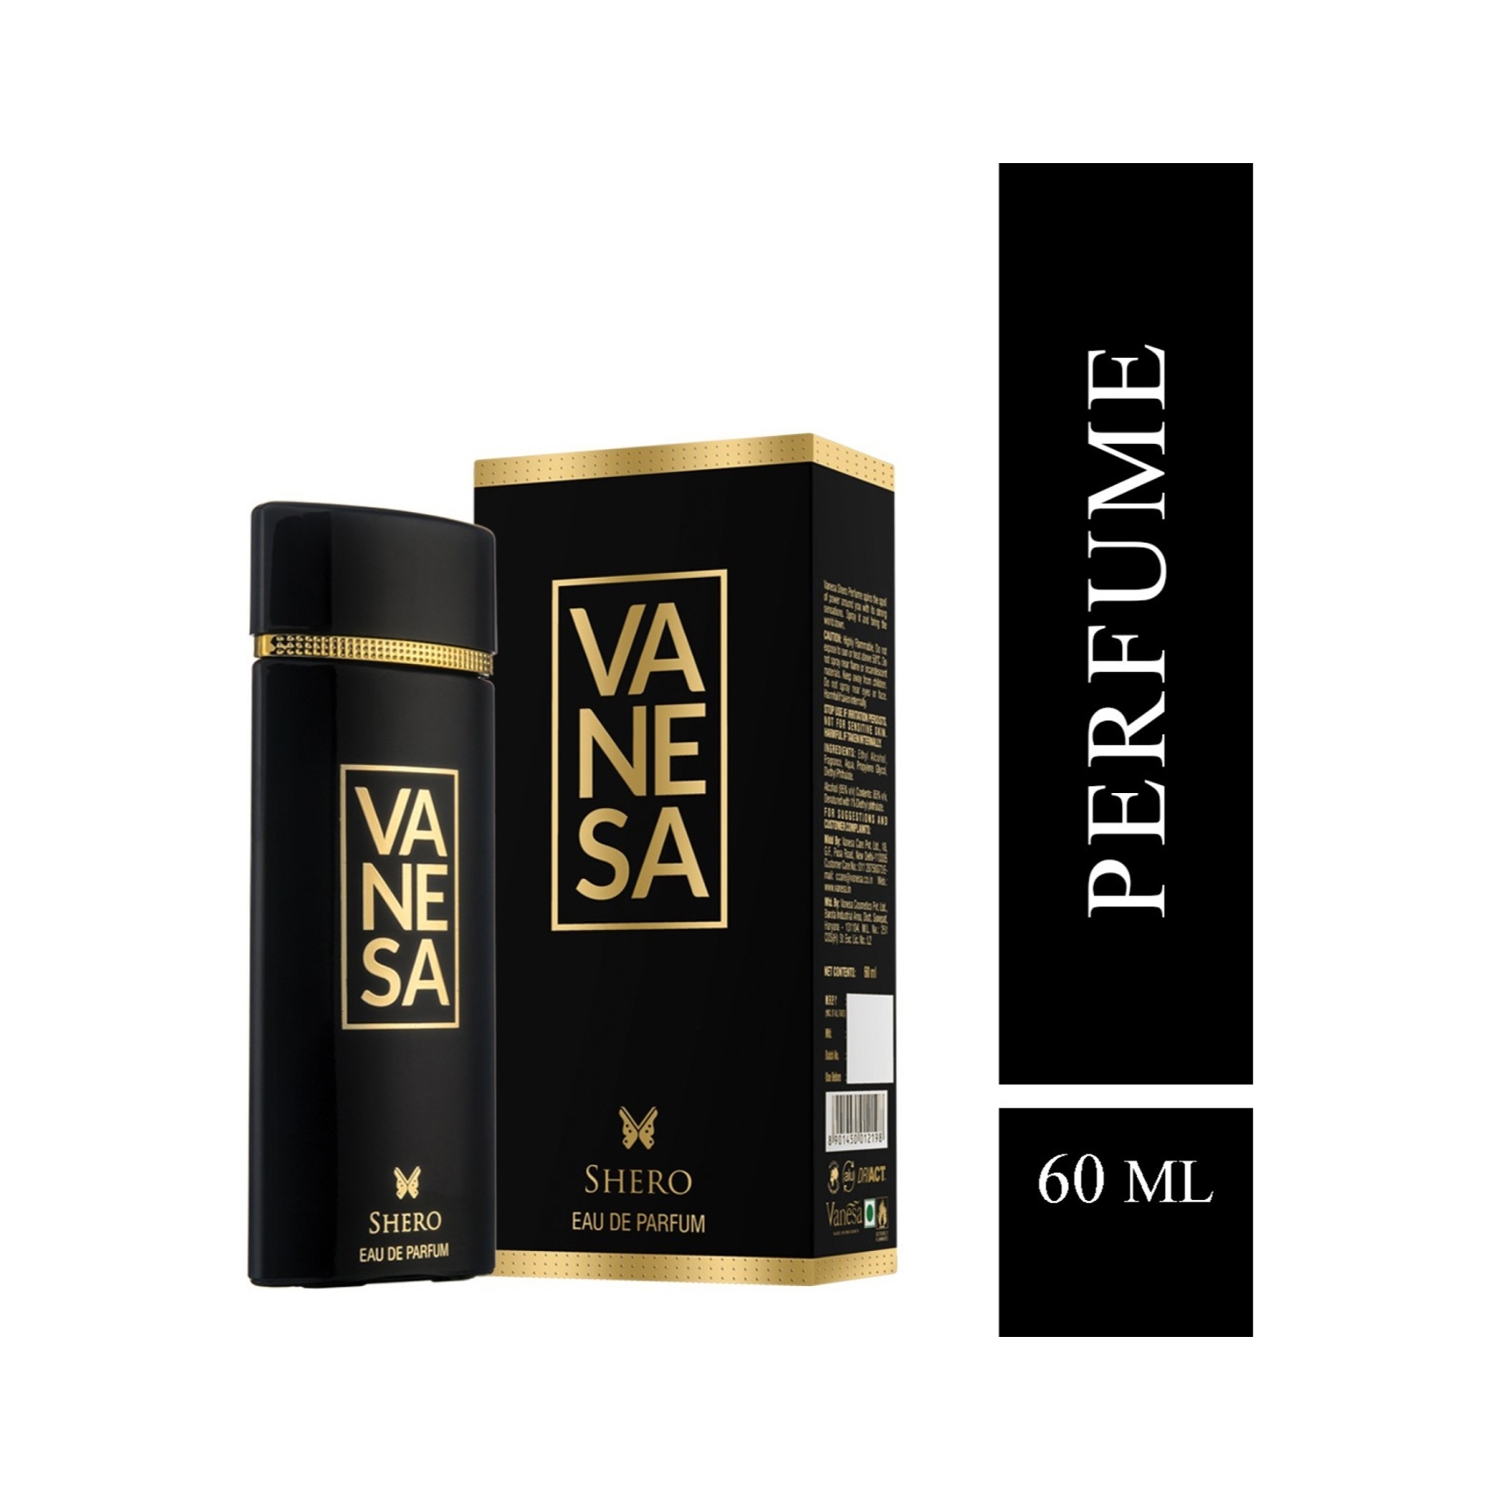 Vanesa Shero Eau De Parfum (60ml)